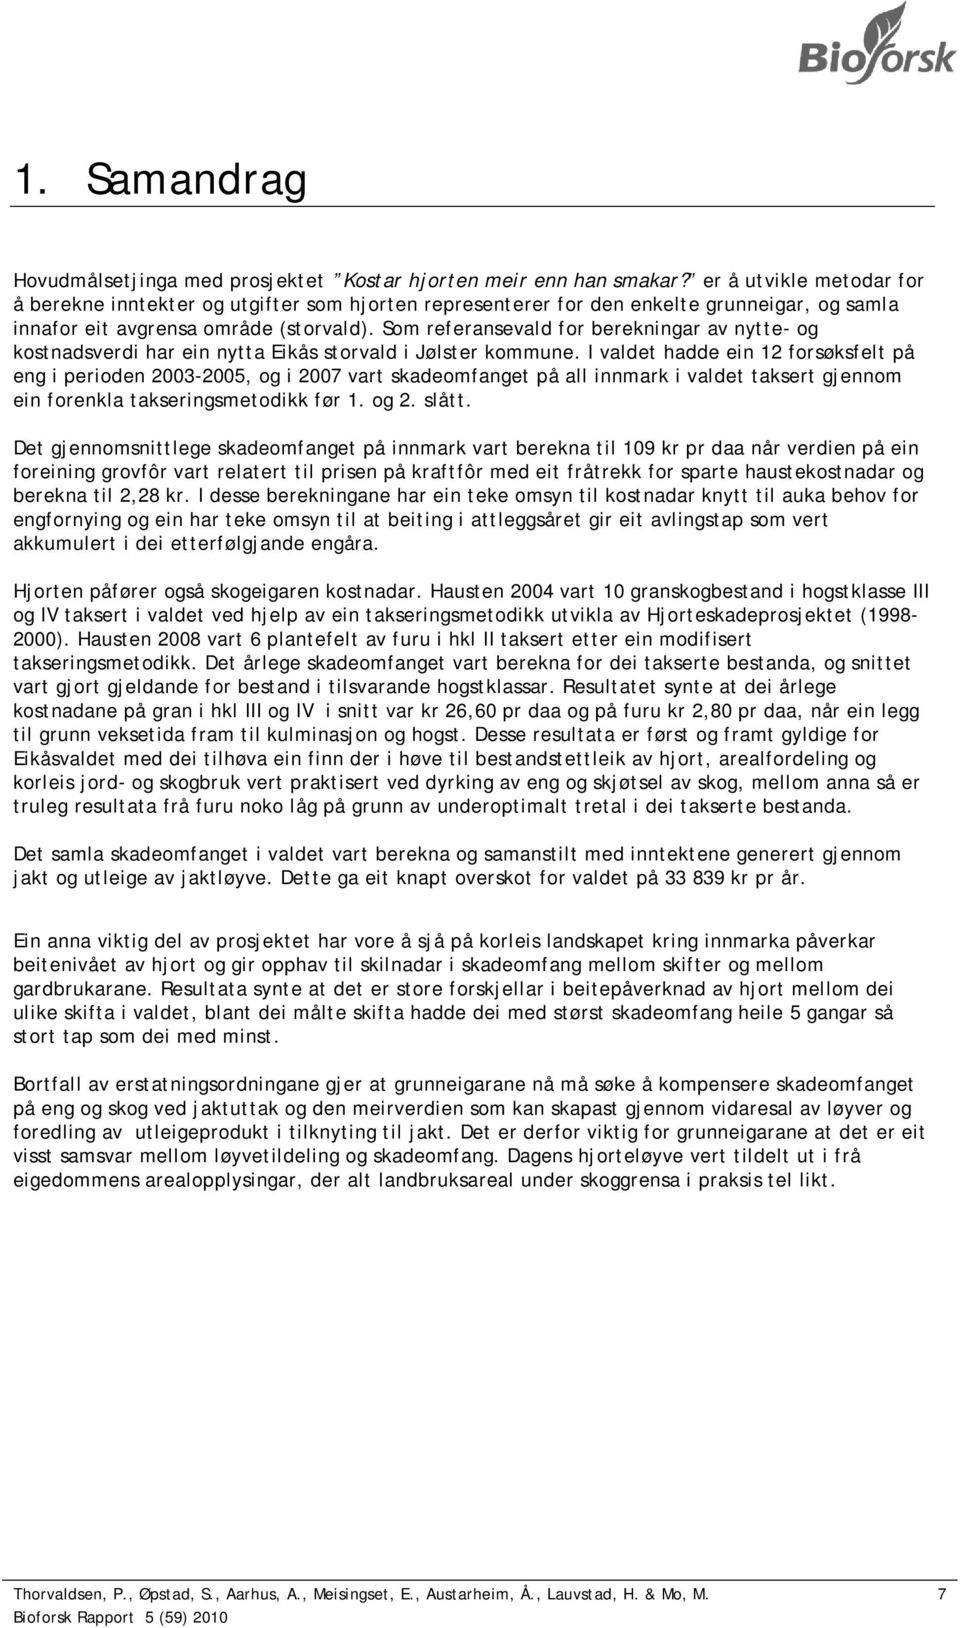 Som referansevald for berekningar av nytte- og kostnadsverdi har ein nytta Eikås storvald i Jølster kommune.